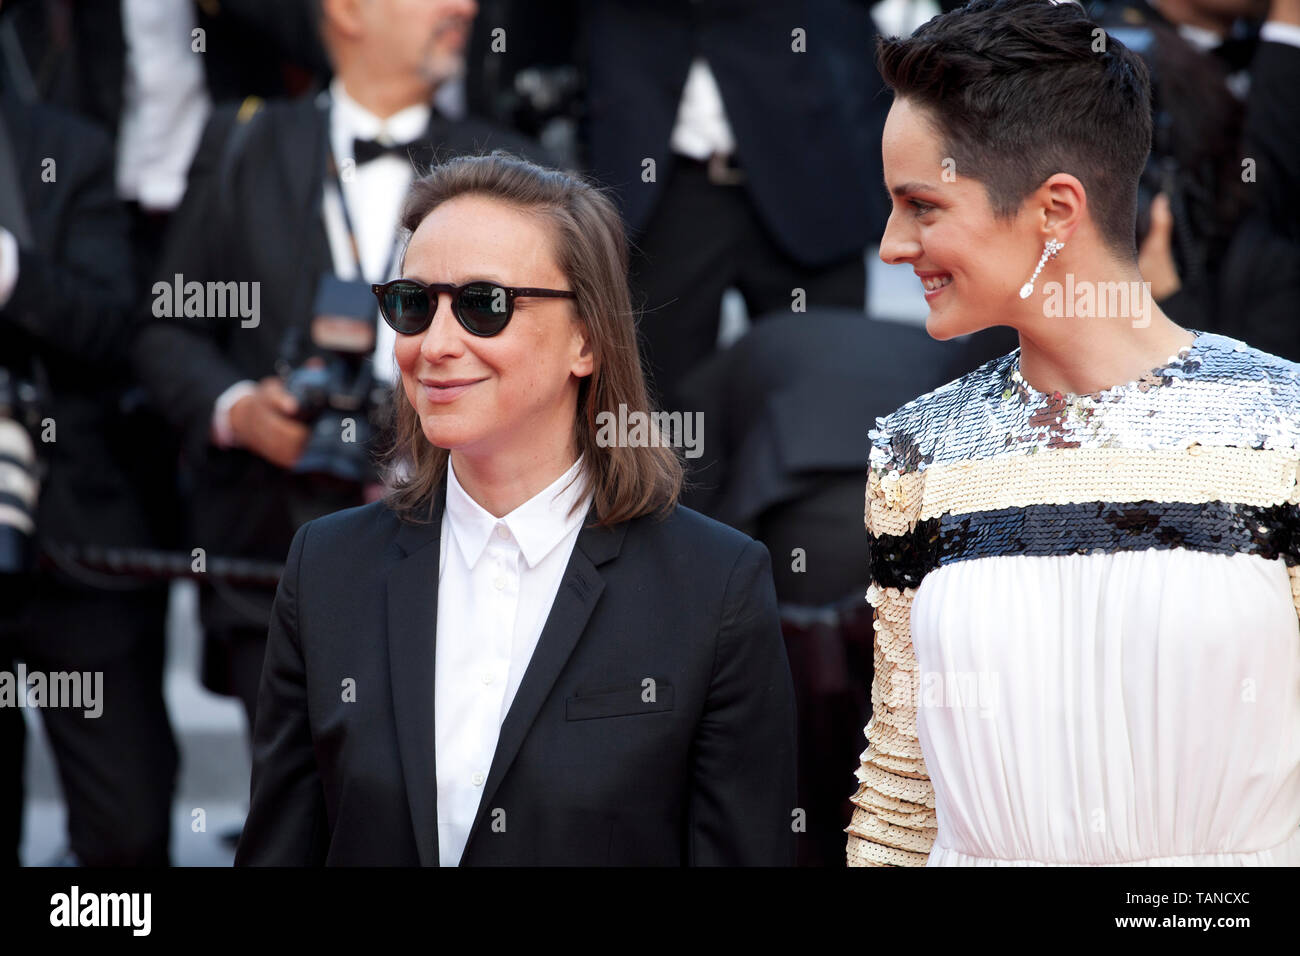 Cannes 2021: Noémie Merlant on Céline Sciamma, Nicolas Ghesquière